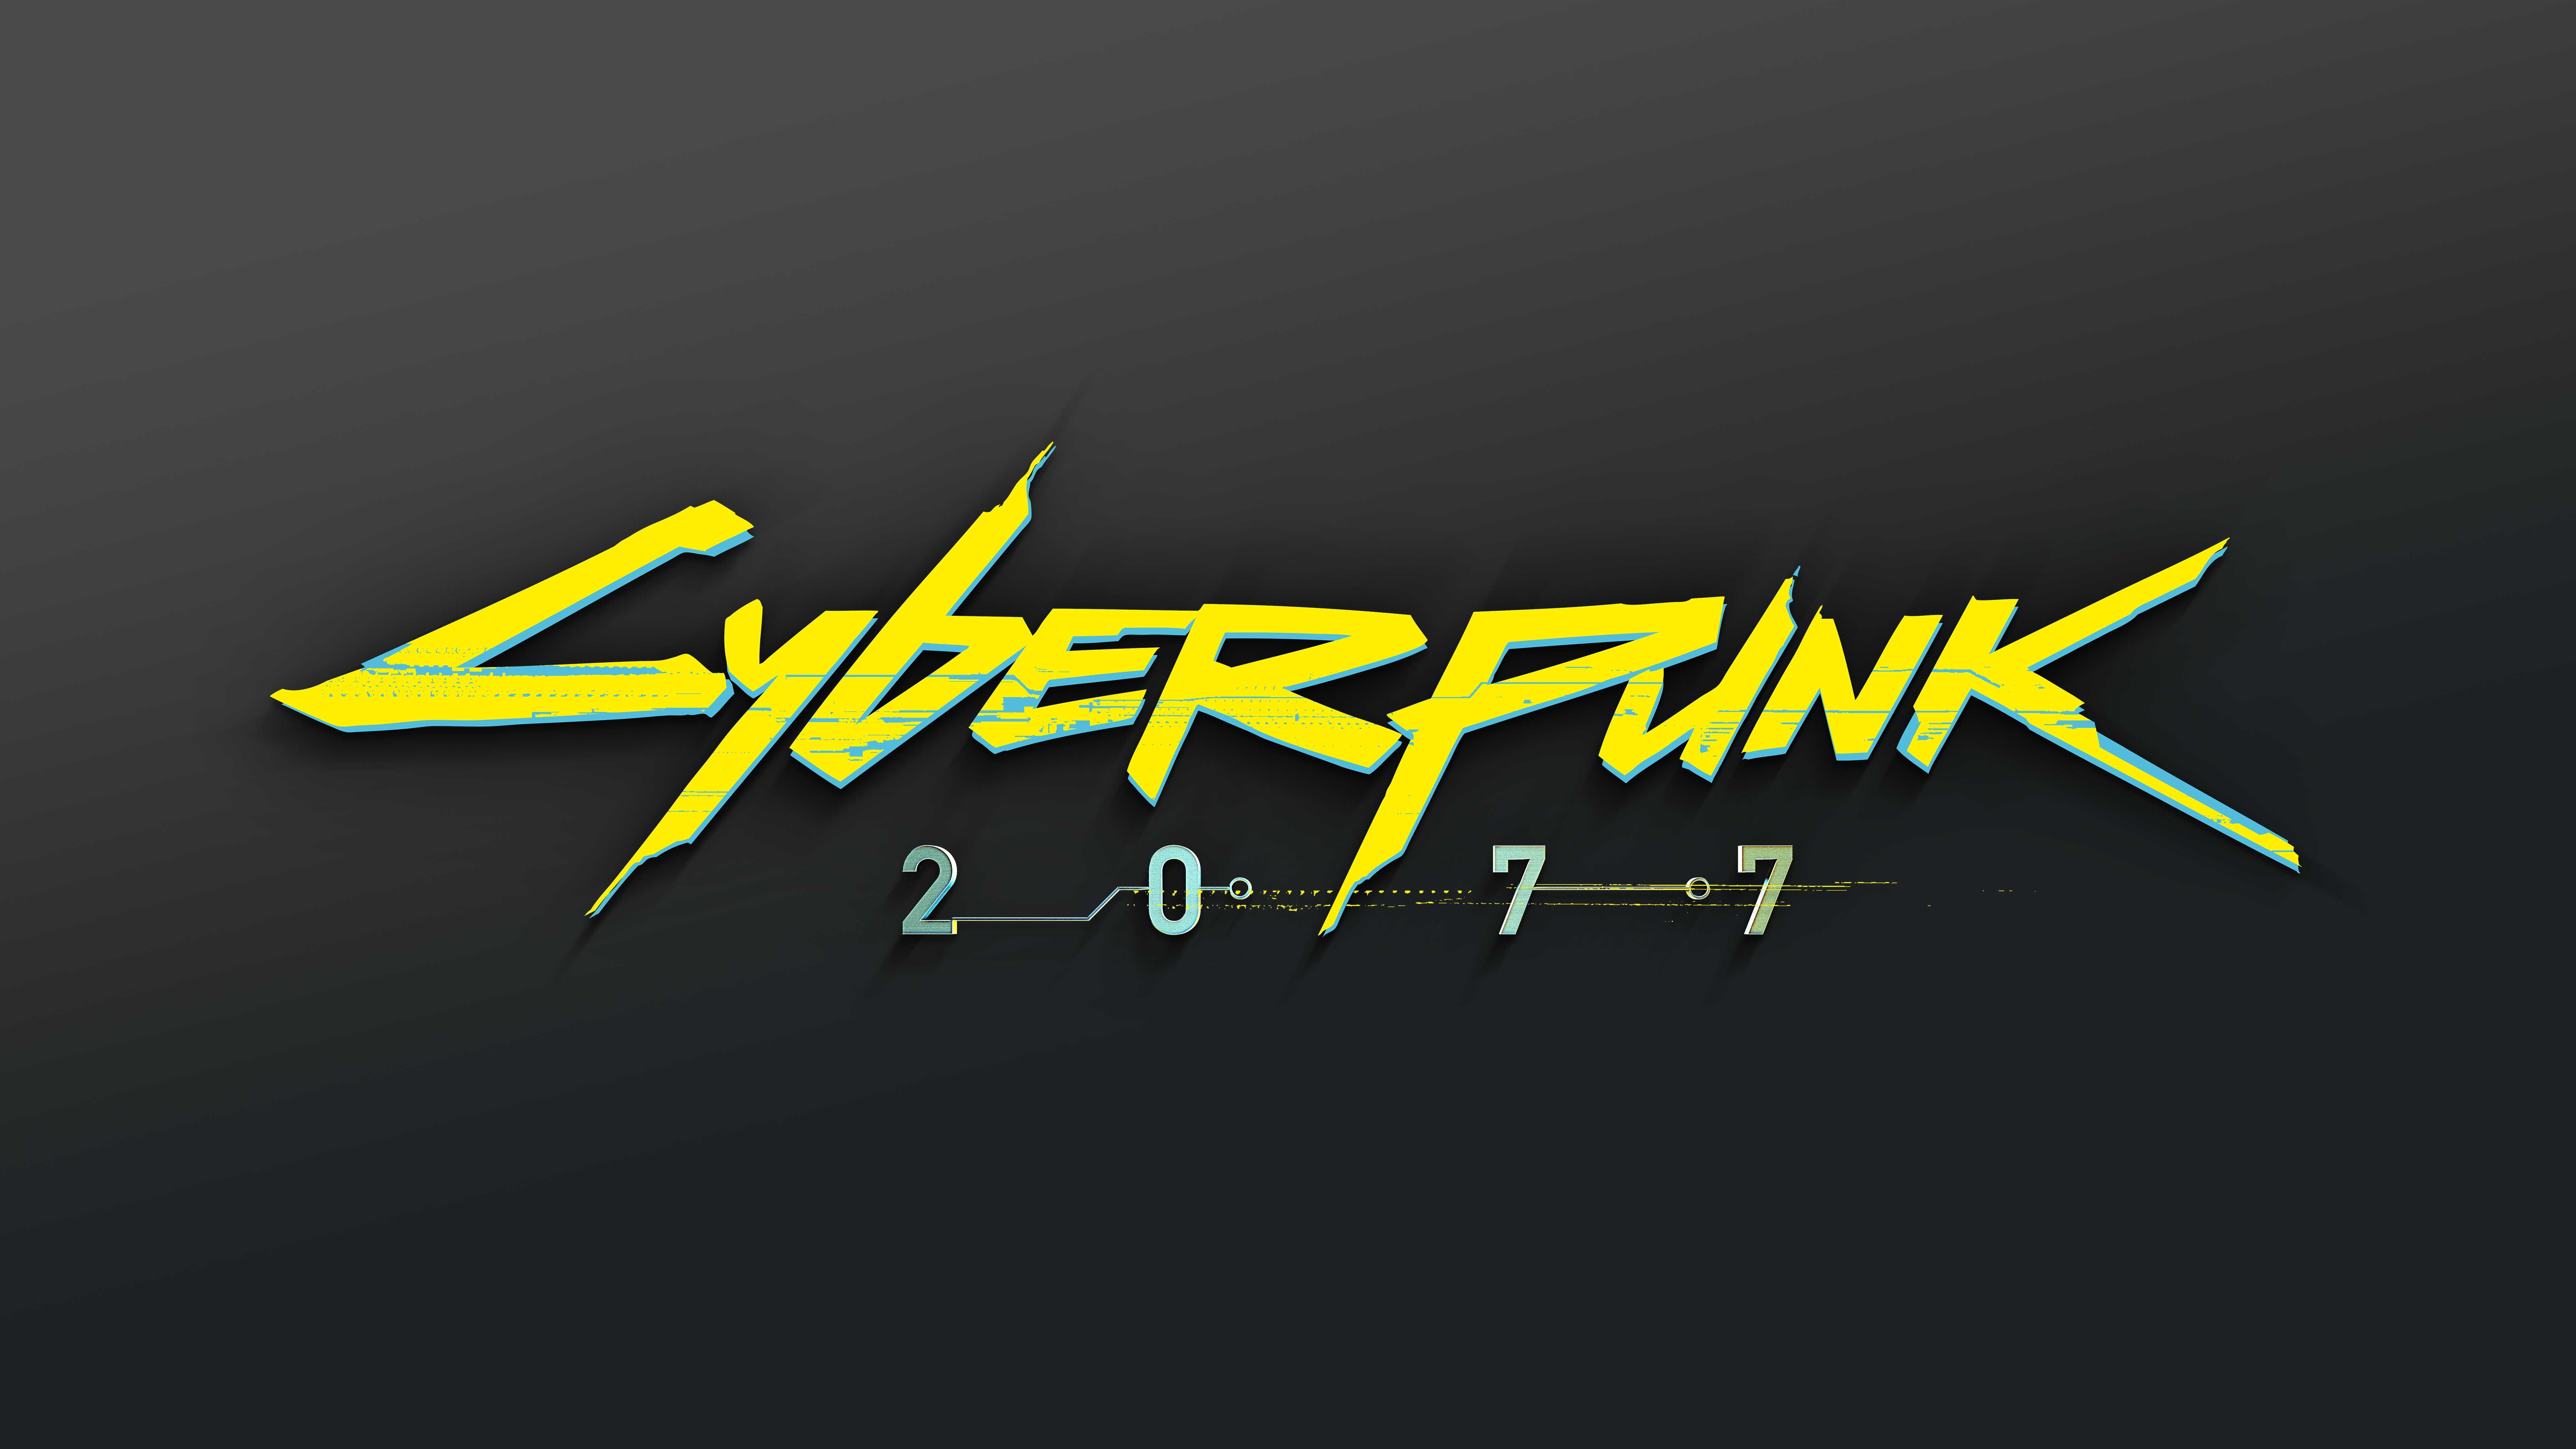 Cyberpunk 2077 Logo 8K. Cyberpunk Cyberpunk, Logos